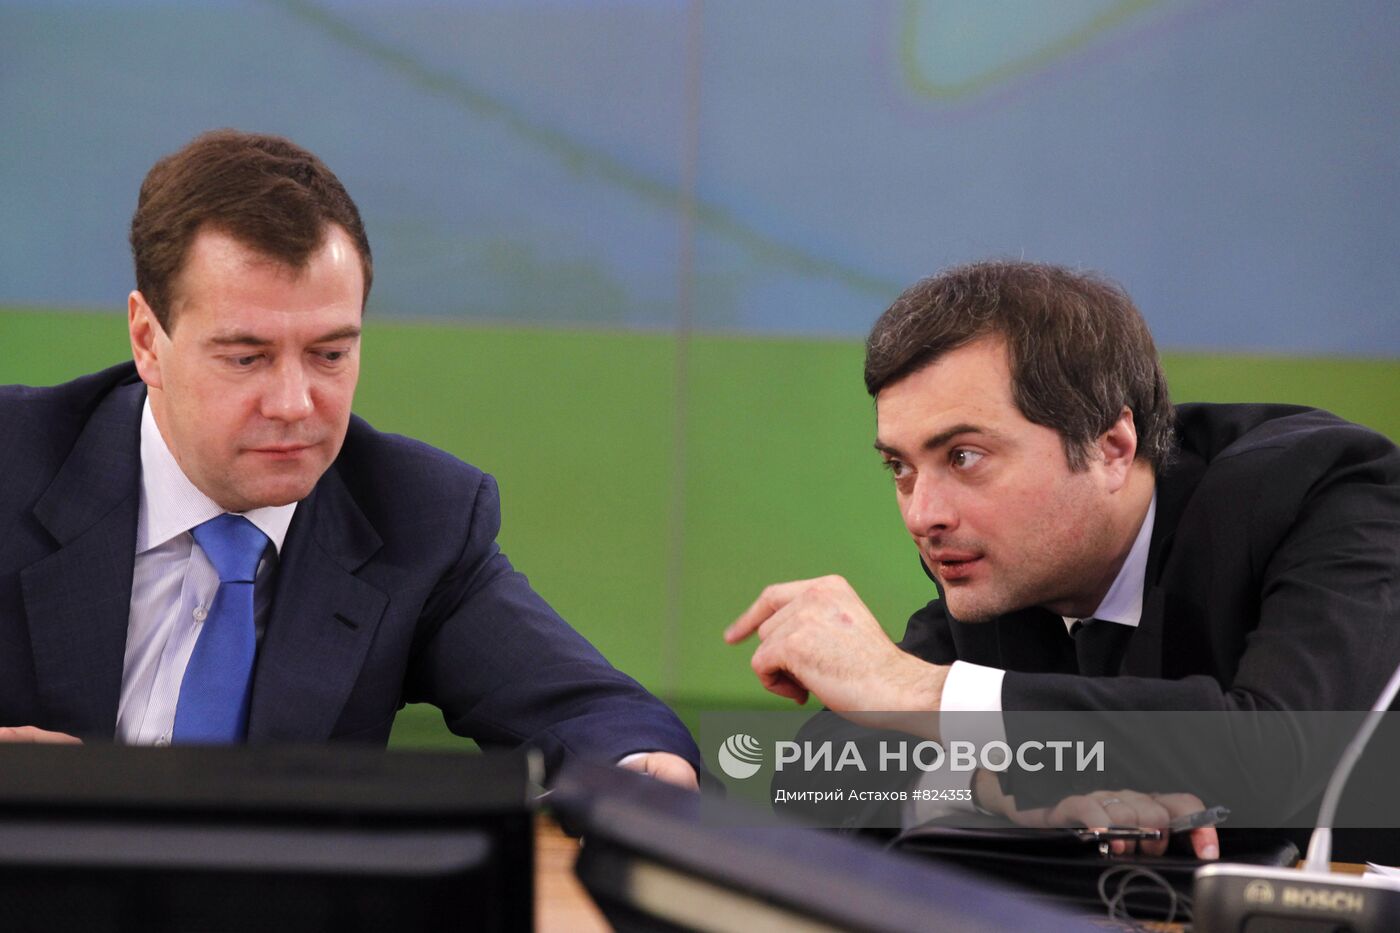 Д.Медведев посетил инновационный центр "Сколково"